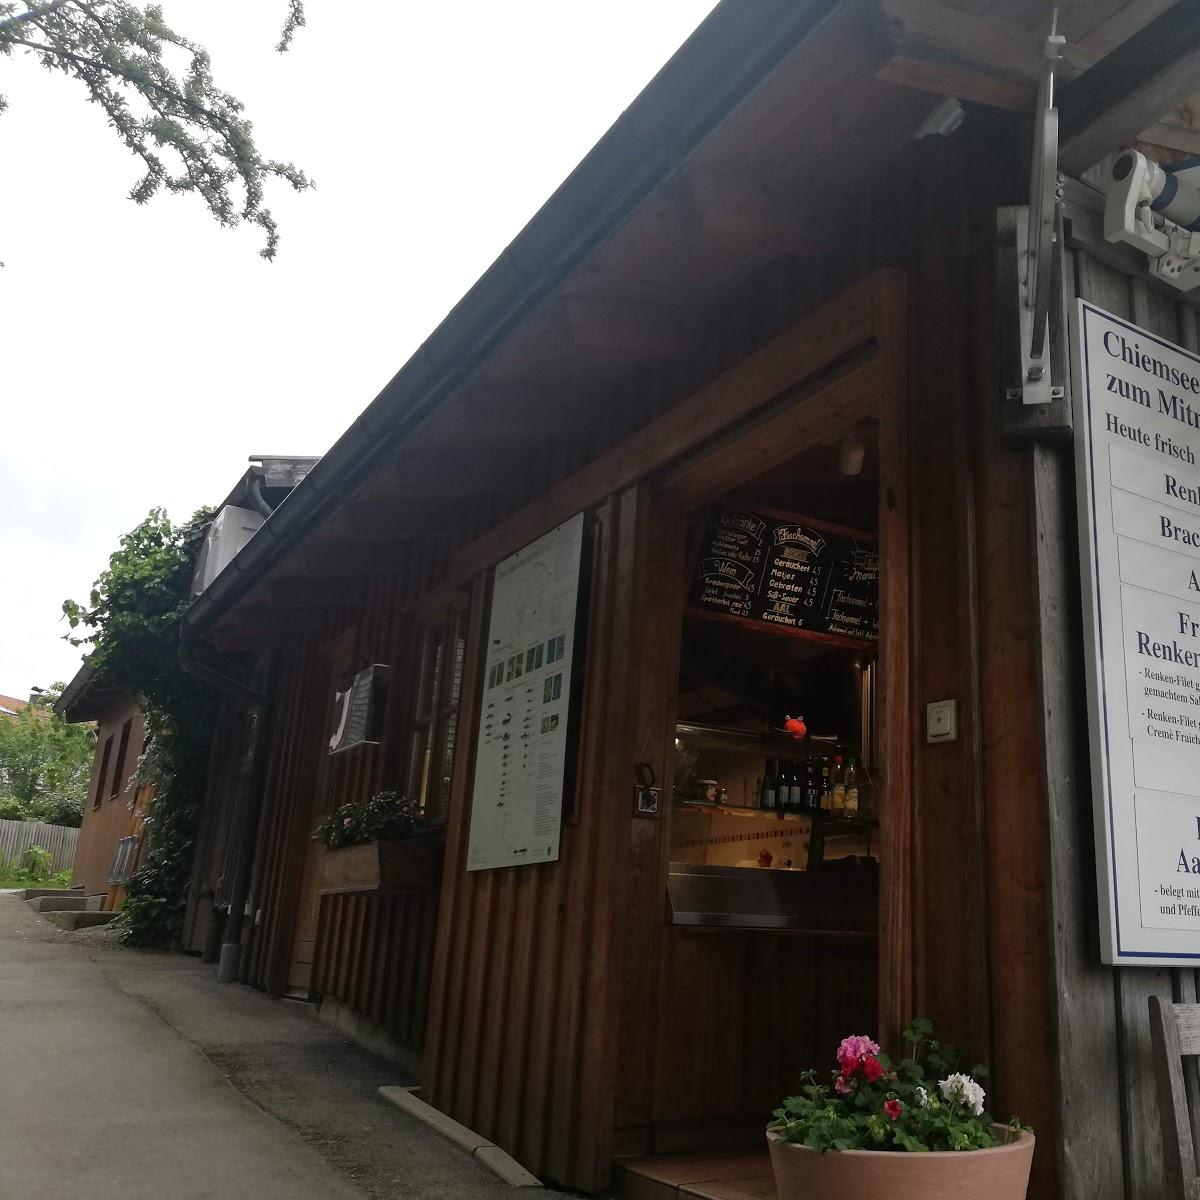 Restaurant "Chiemseefischerei Lex" in Frauenchiemsee